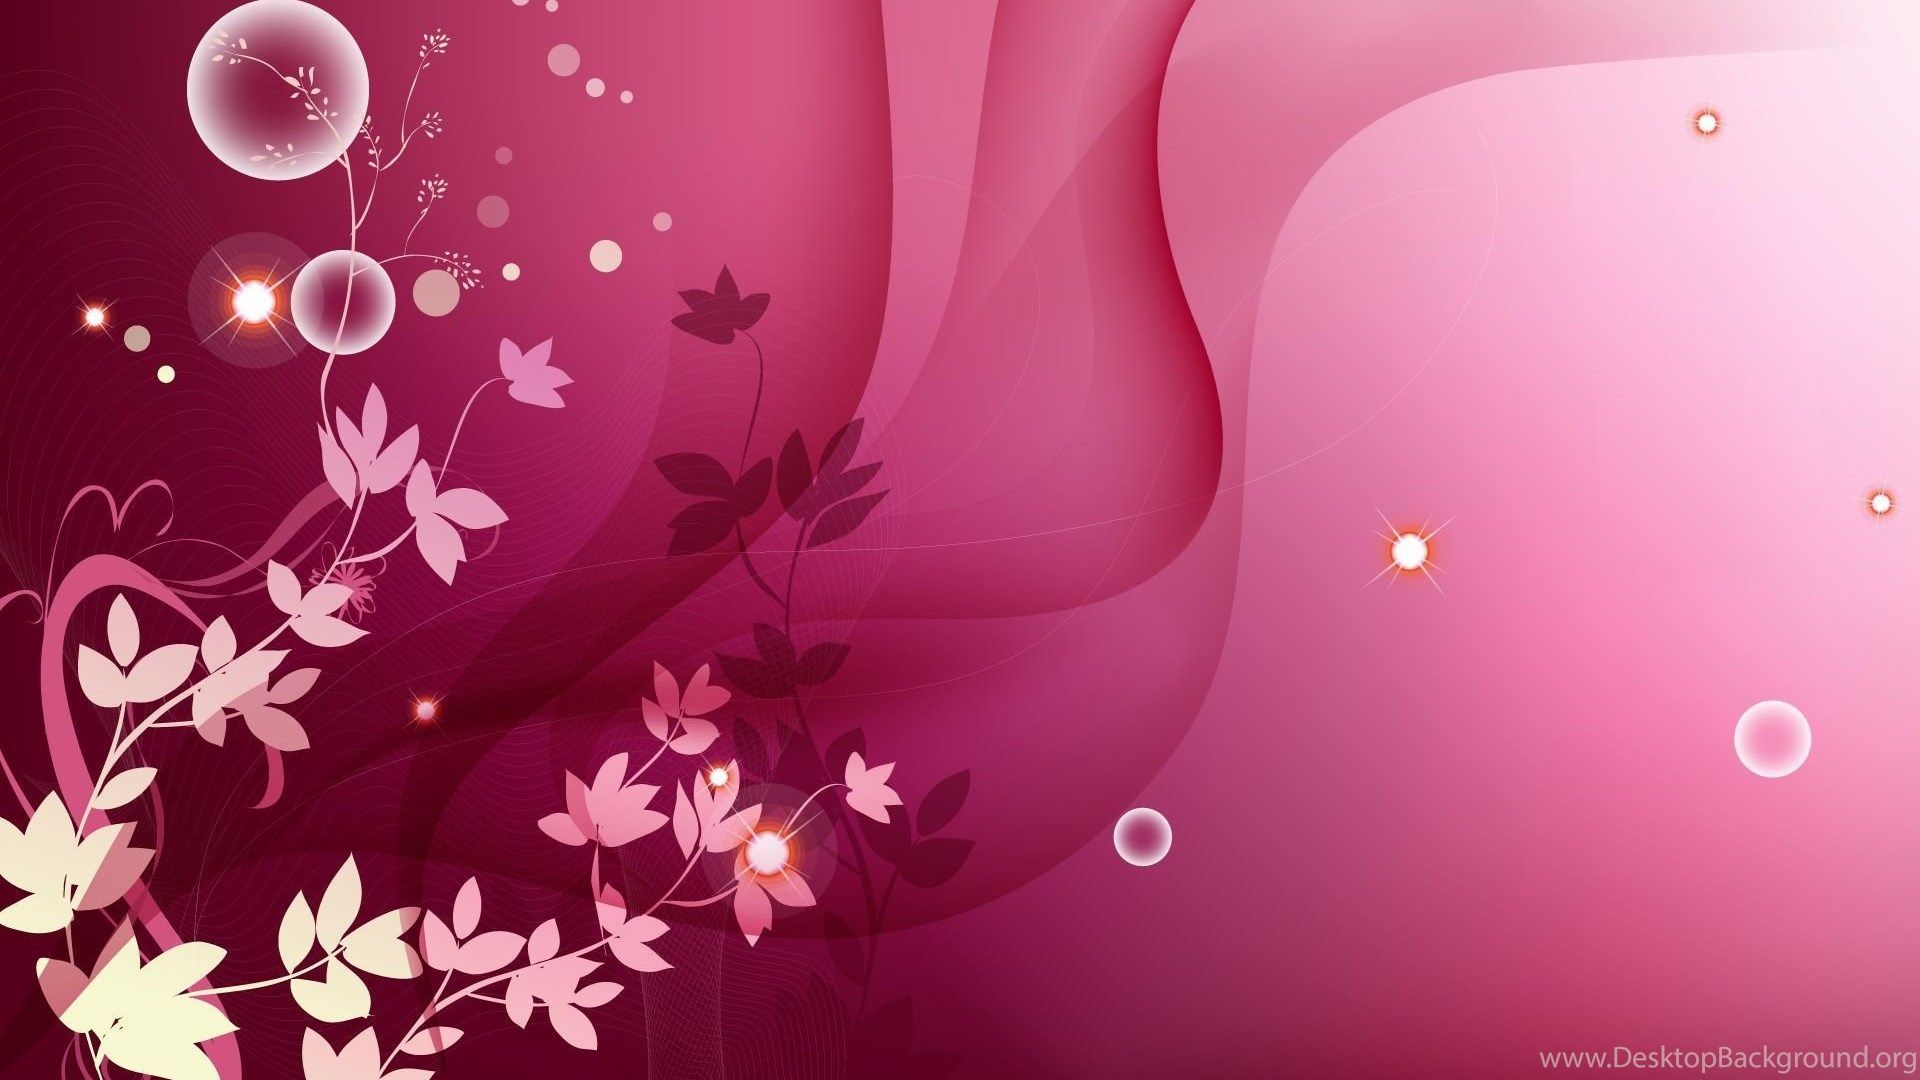 Pink Wallpaper For Desktop Background Free